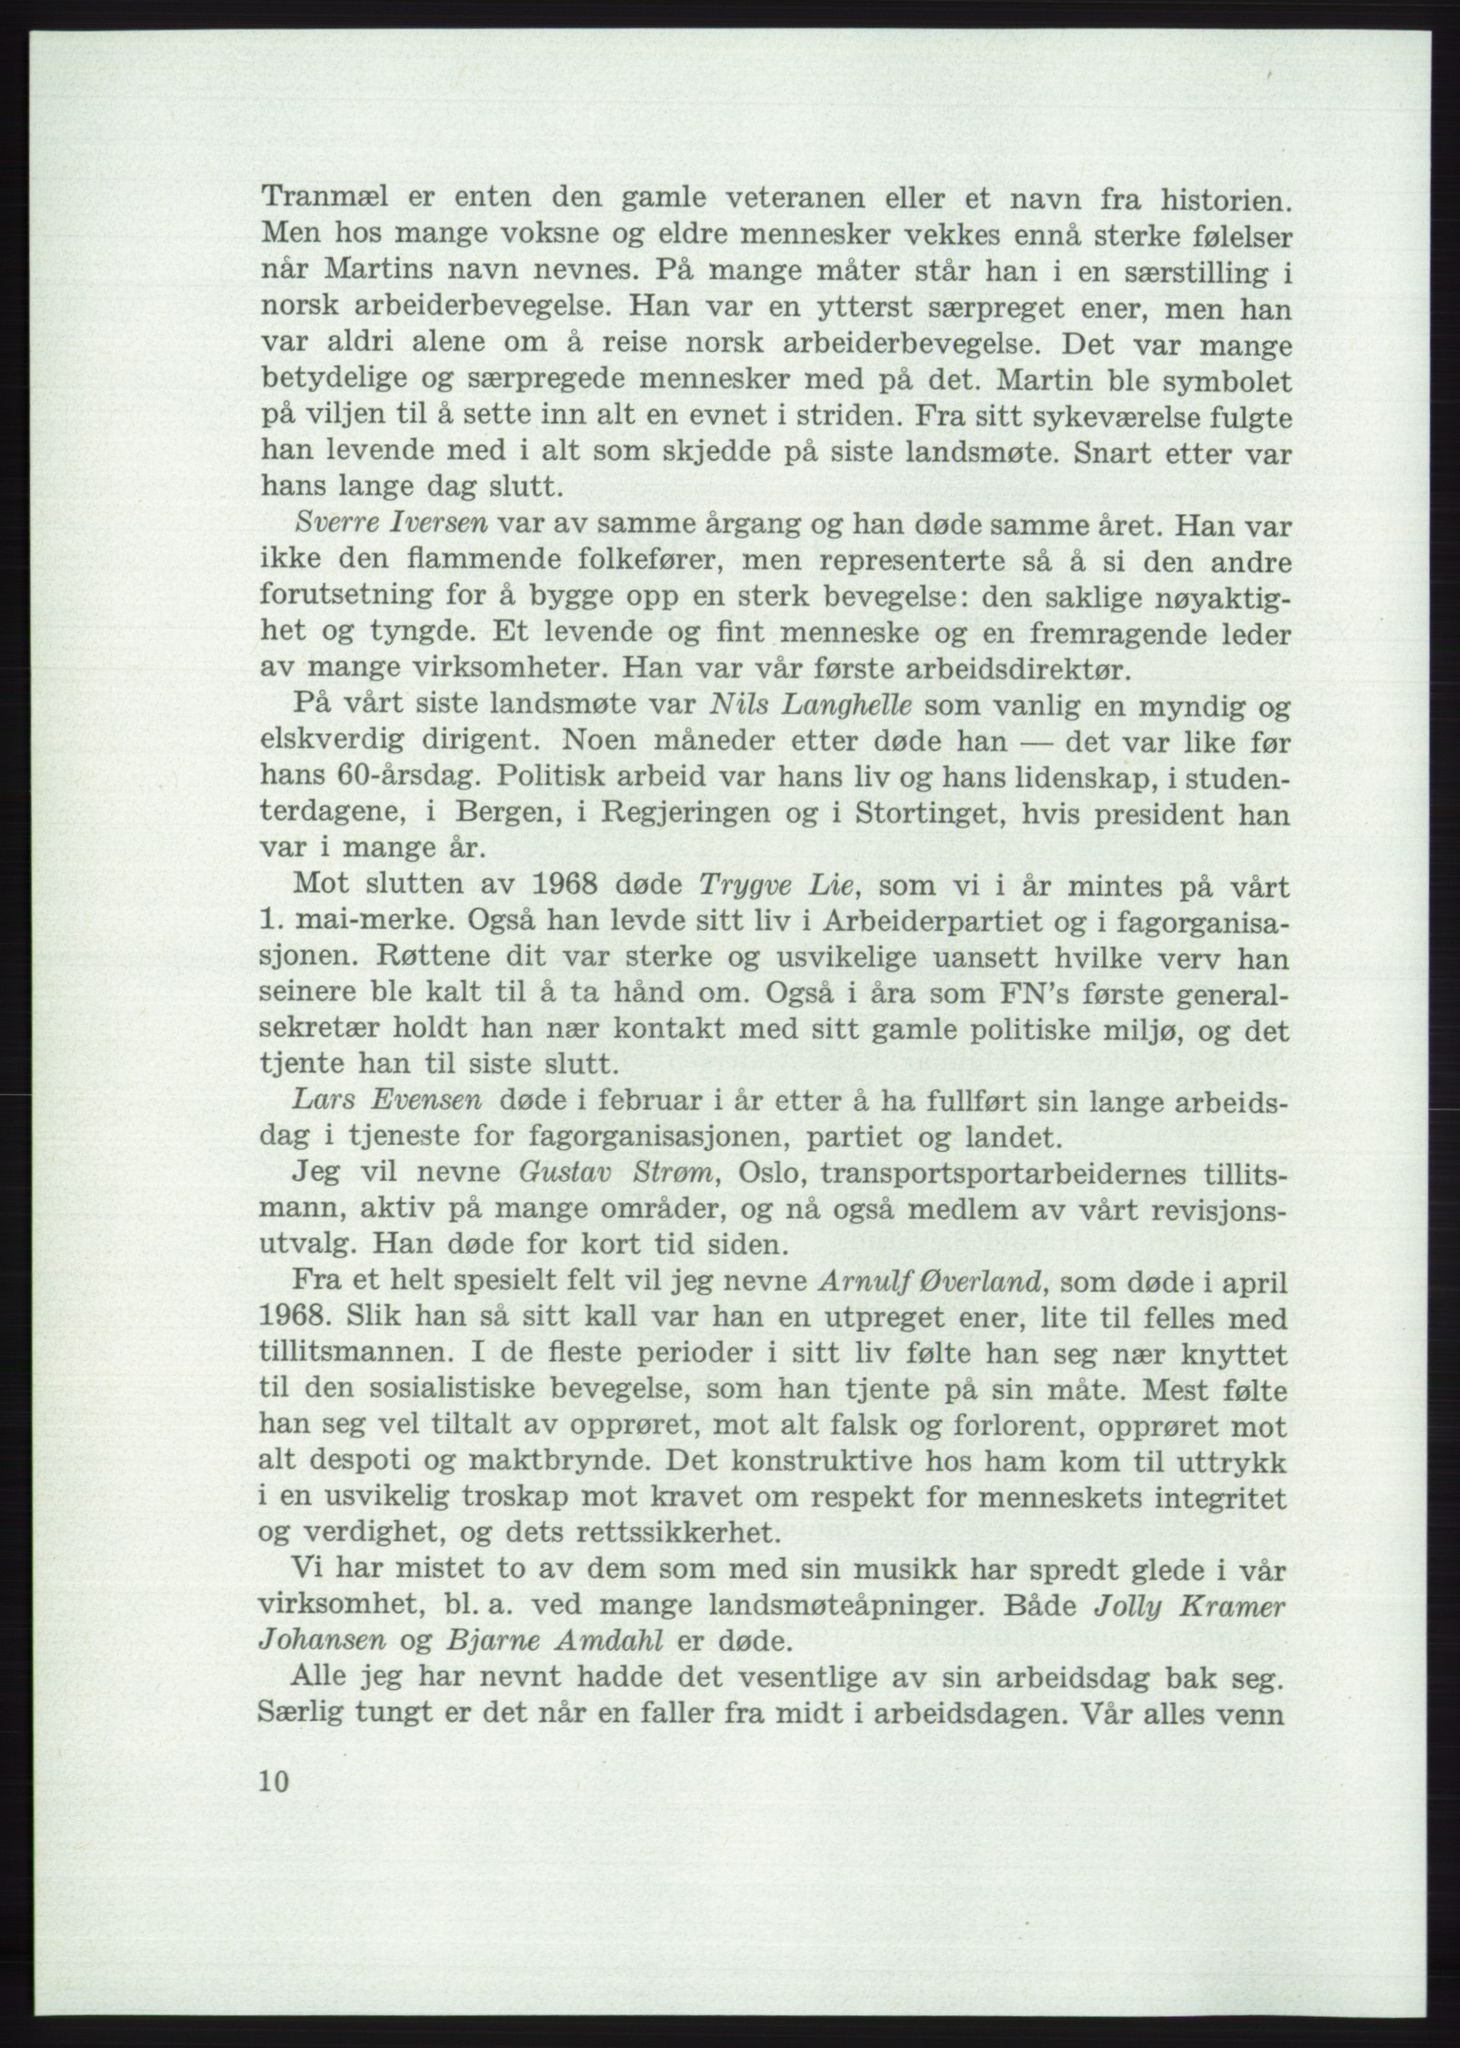 Det norske Arbeiderparti - publikasjoner, AAB/-/-/-: Protokoll over forhandlingene på det 42. ordinære landsmøte 11.-14. mai 1969 i Oslo, 1969, p. 10